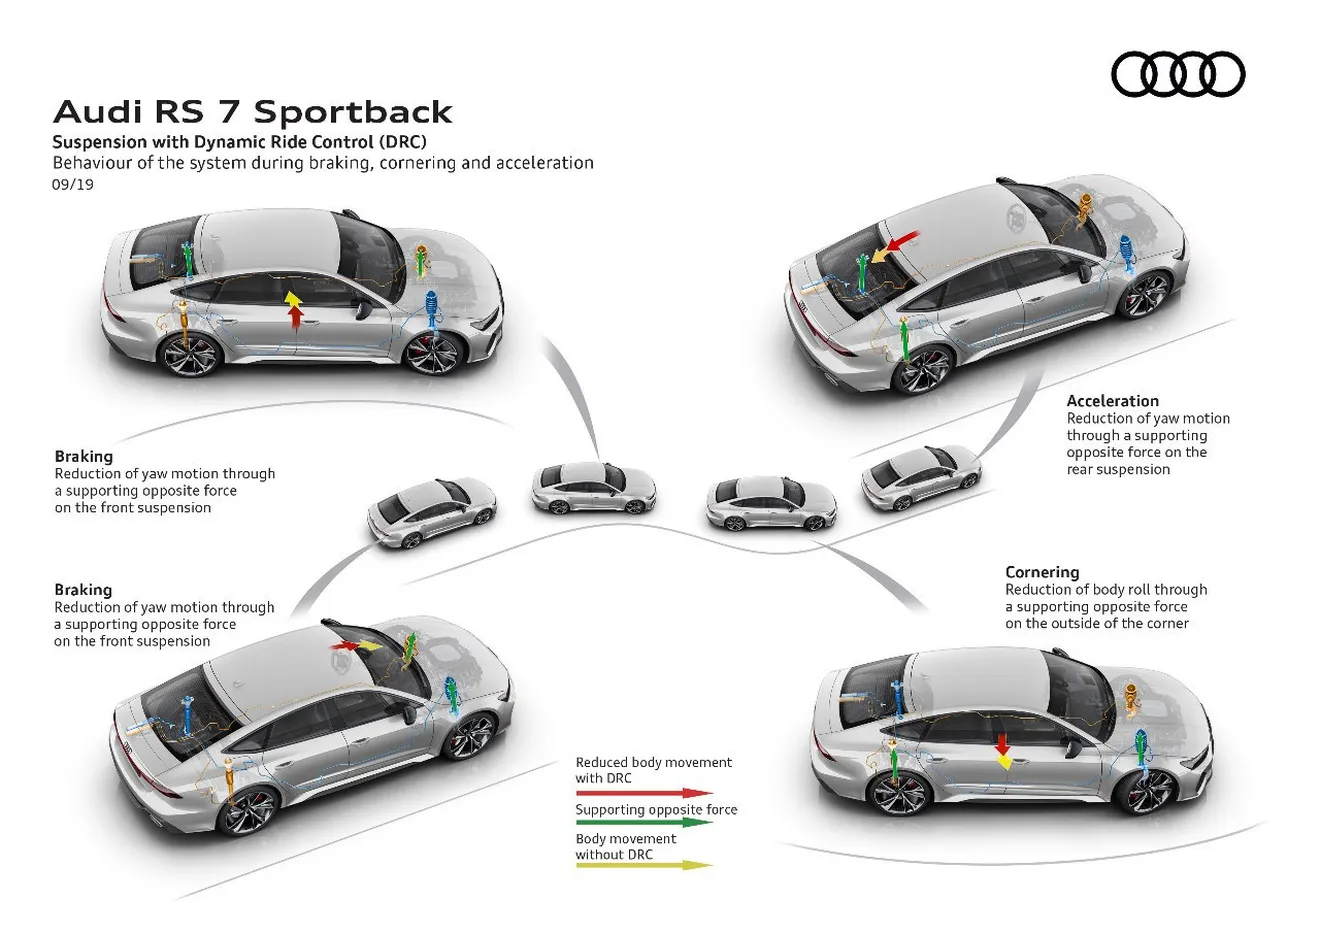 Audi integrará más el control electrónico de sus coches